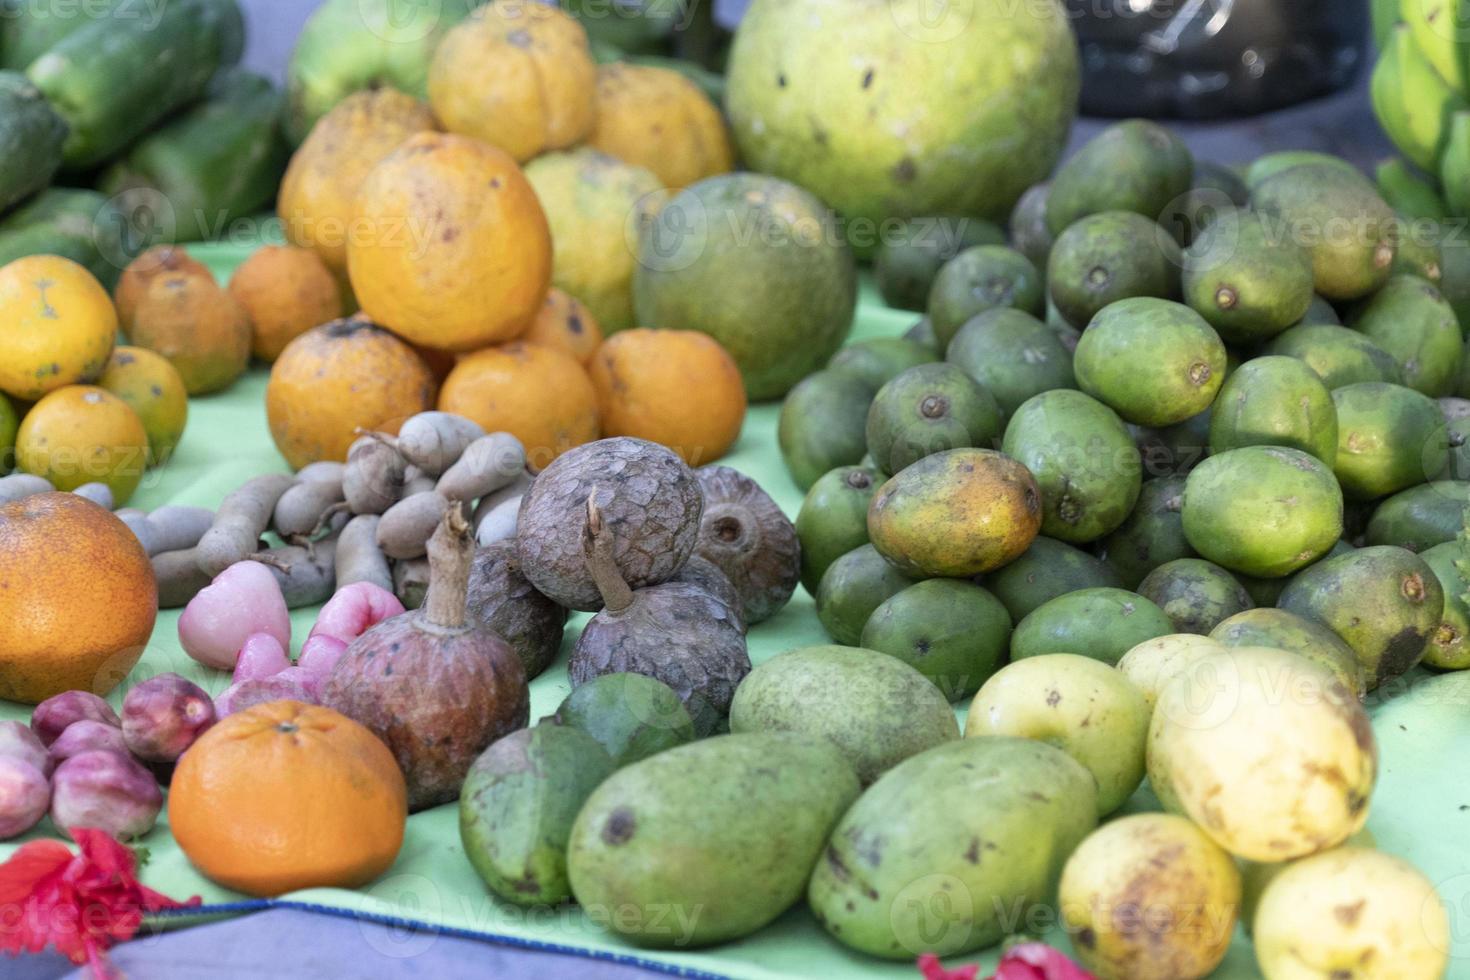 muitos tipos de frutas tropicais no mercado foto